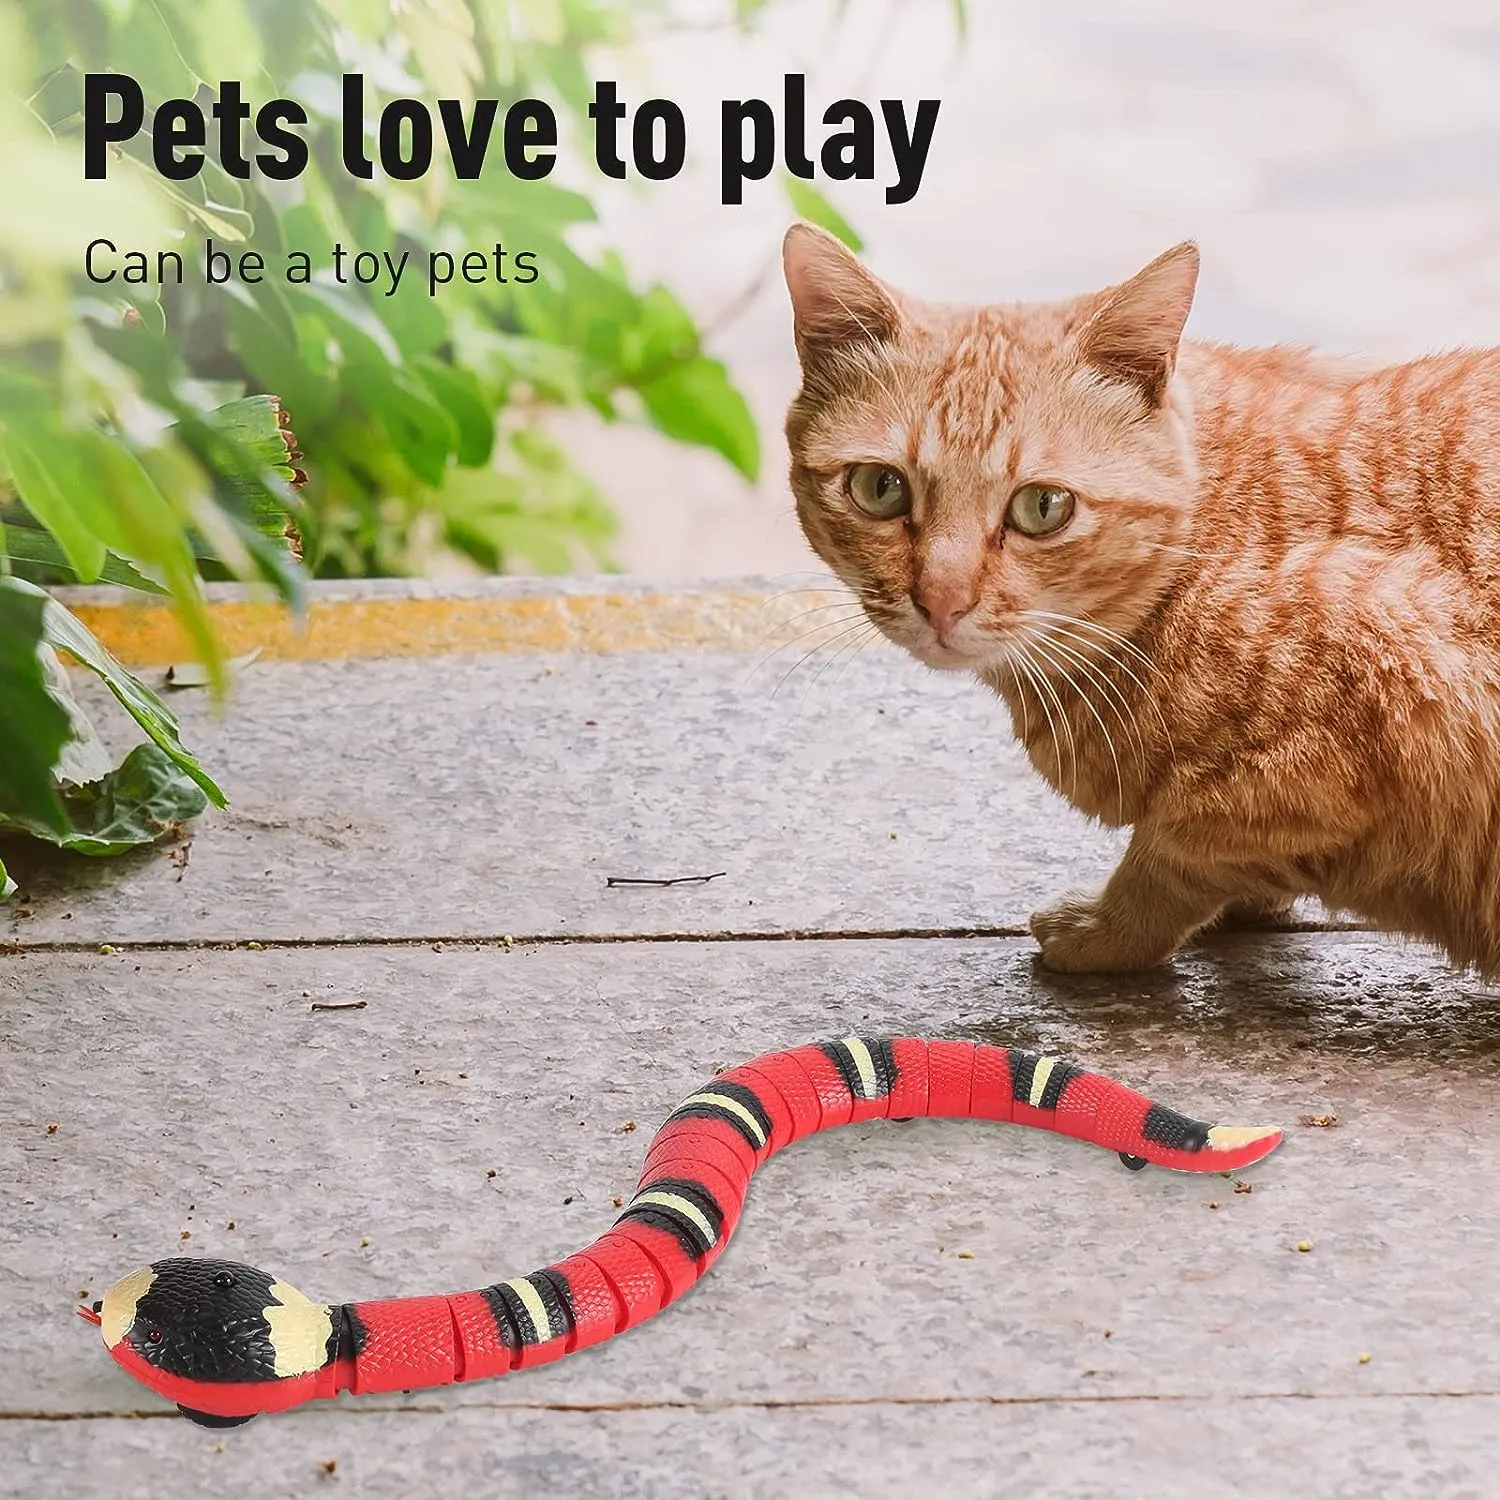 원격 제어 뱀 대화식 장난감 현실적인 시뮬레이션 스마트 감지 장난감은 자동으로 장애물을 감지하고 실내 고양이 개를위한 전기를 빠져 나가는 탈출 전기